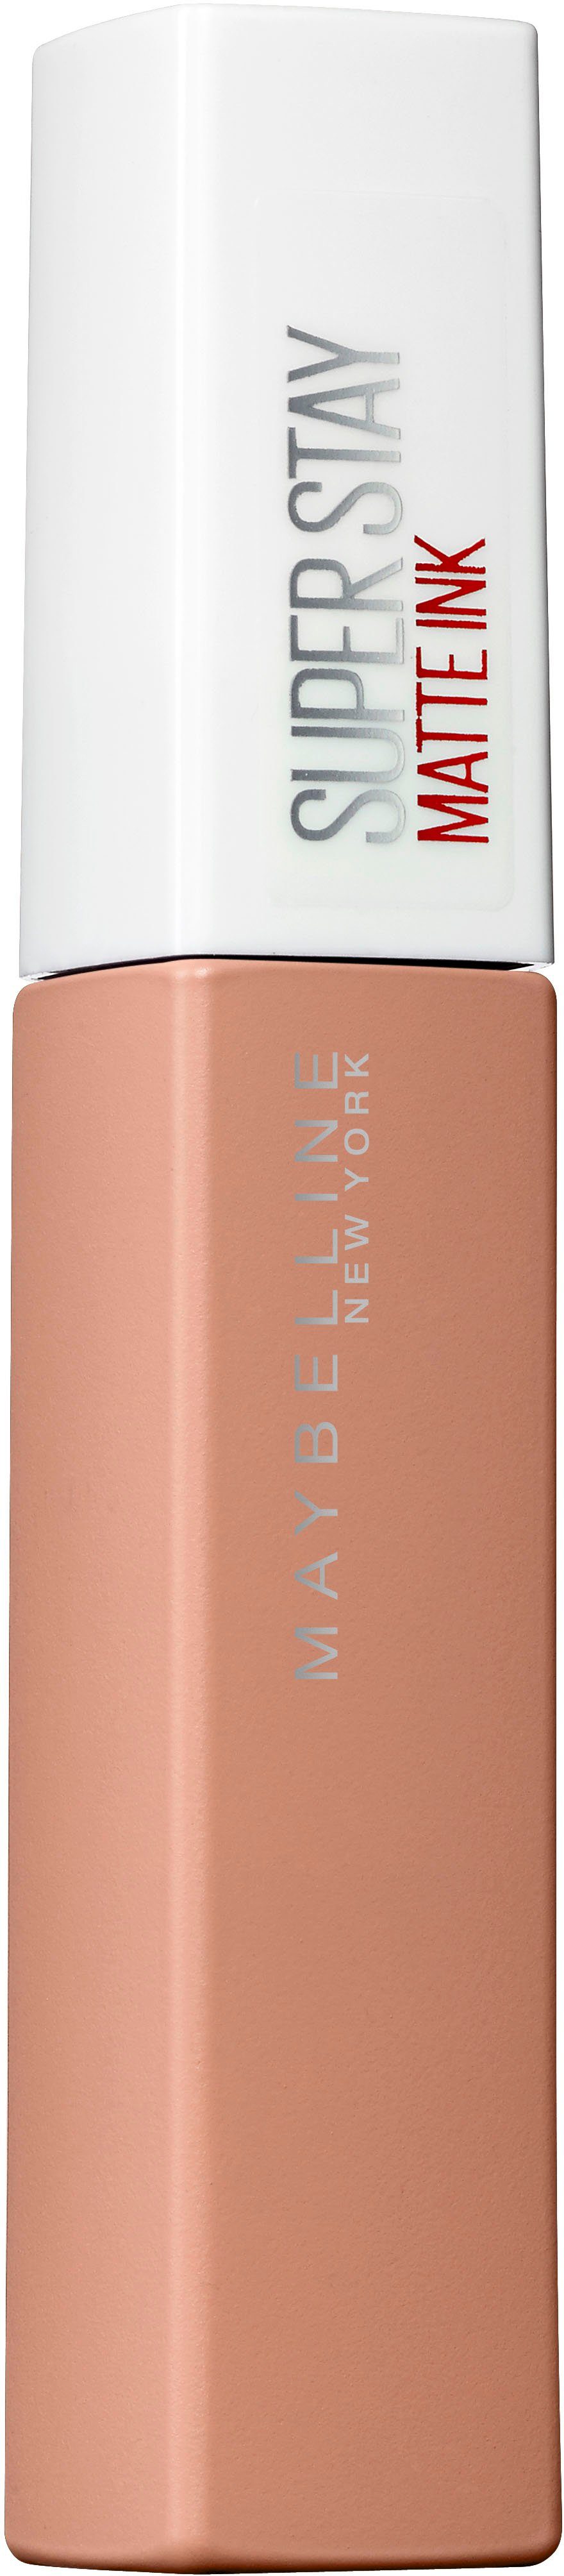 MAYBELLINE NEW YORK Lippenstift Super Stay Matte Ink Nude,  Hochkonzentrierte Farbpigmente mit angesagtem mattem Finish